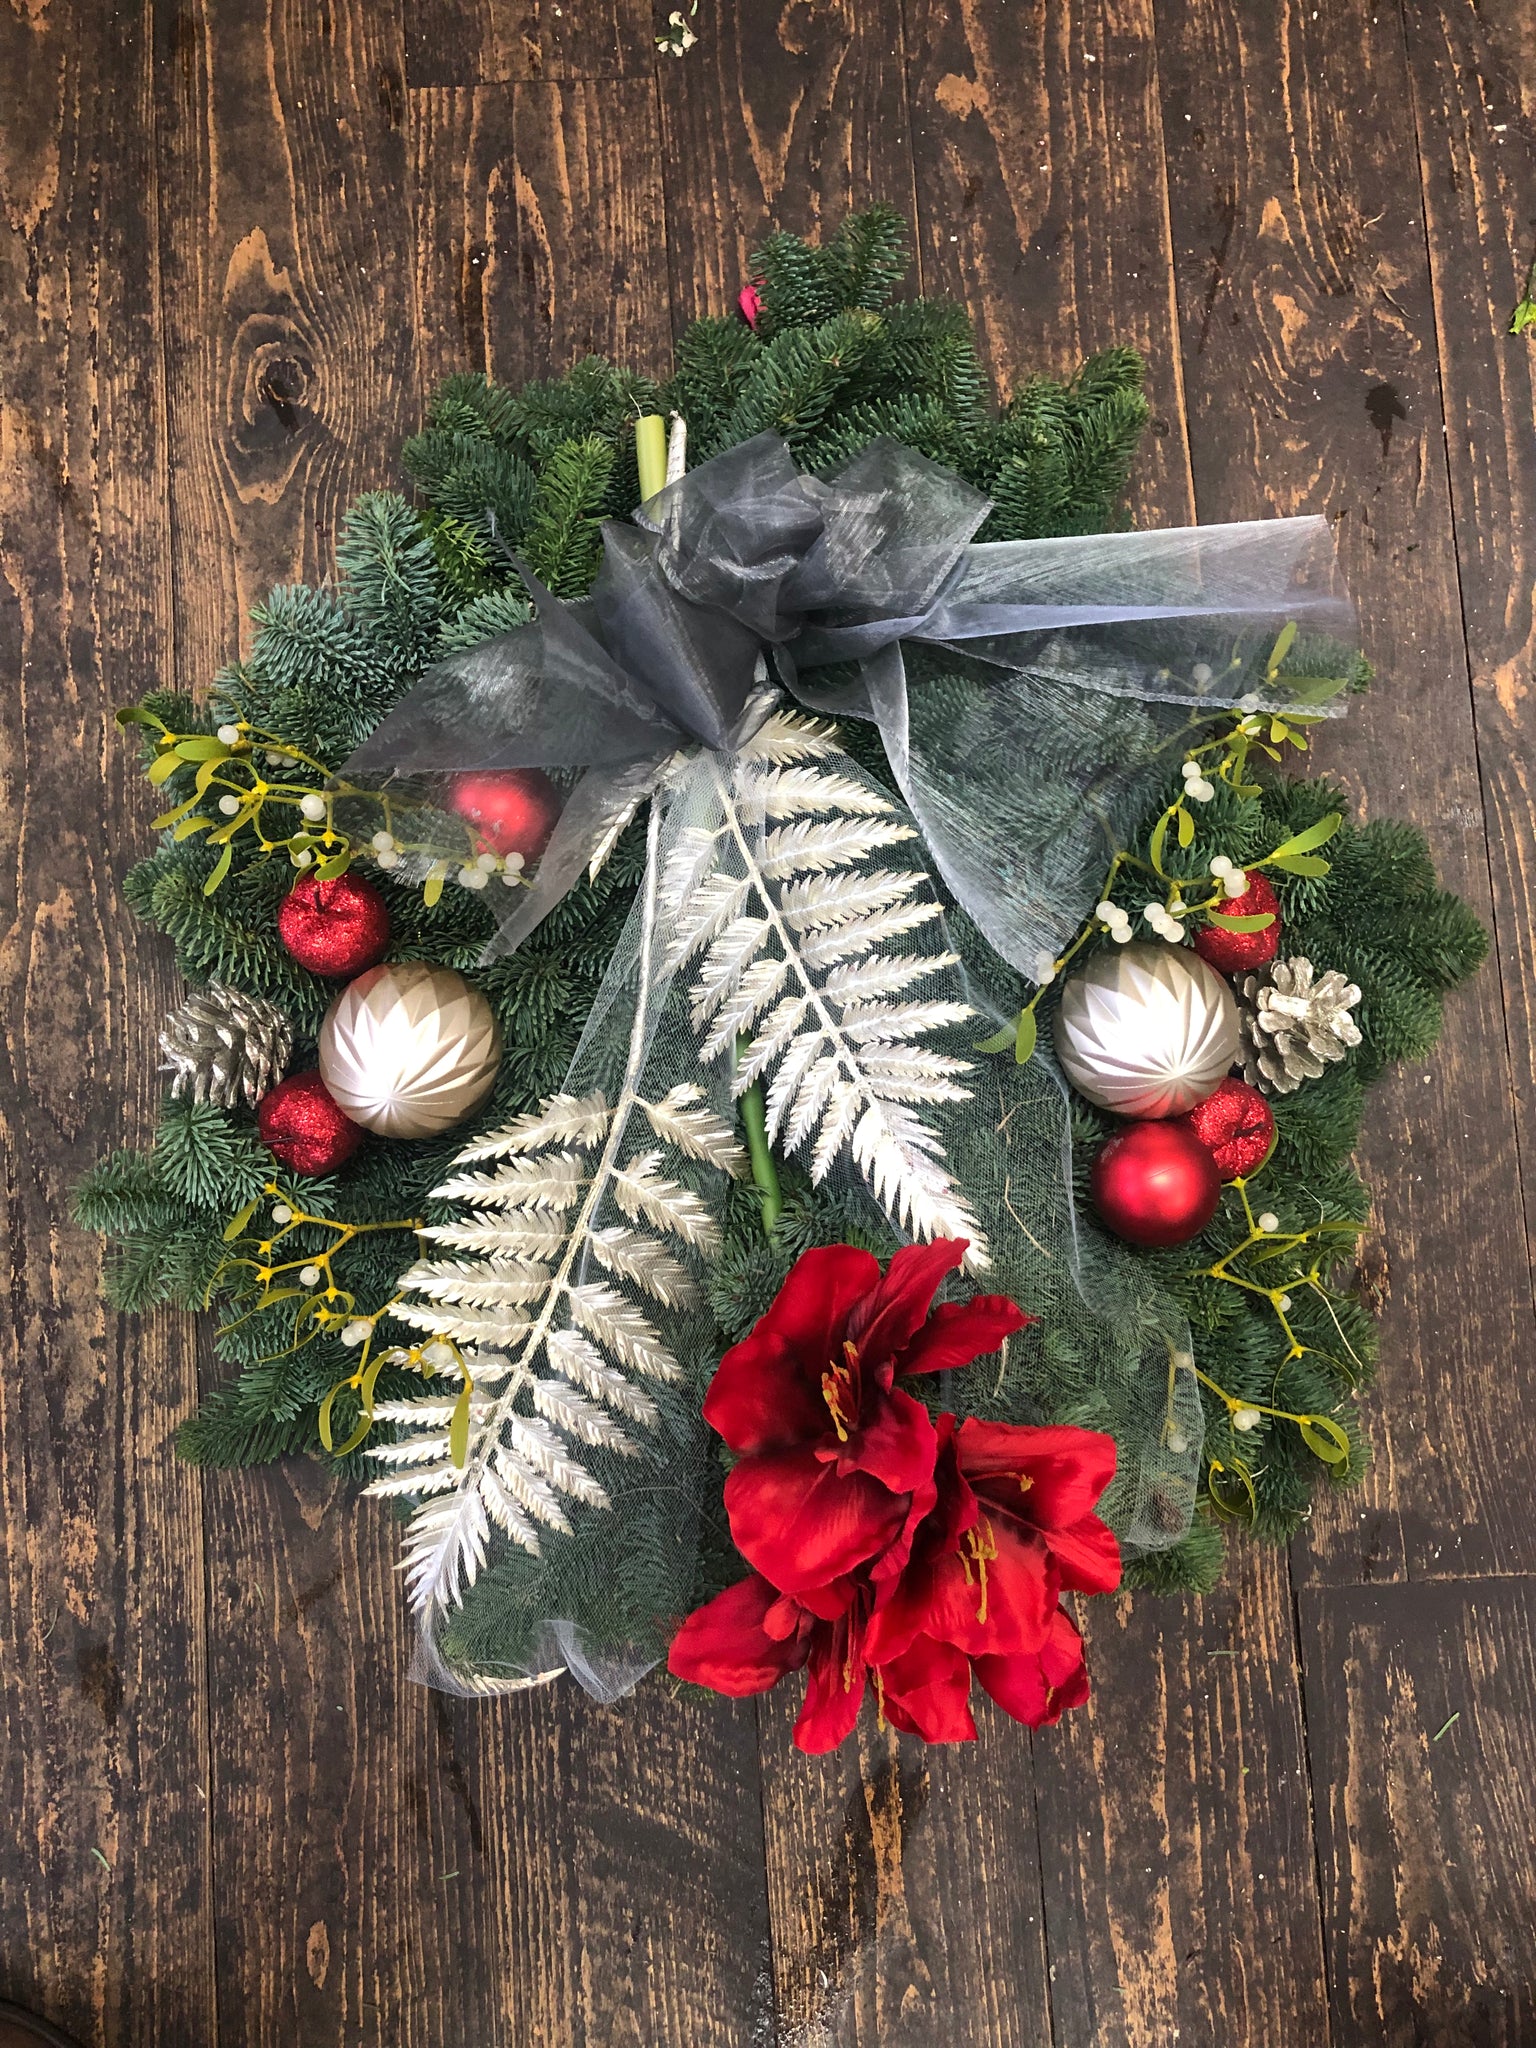 23. Christmas door wreath